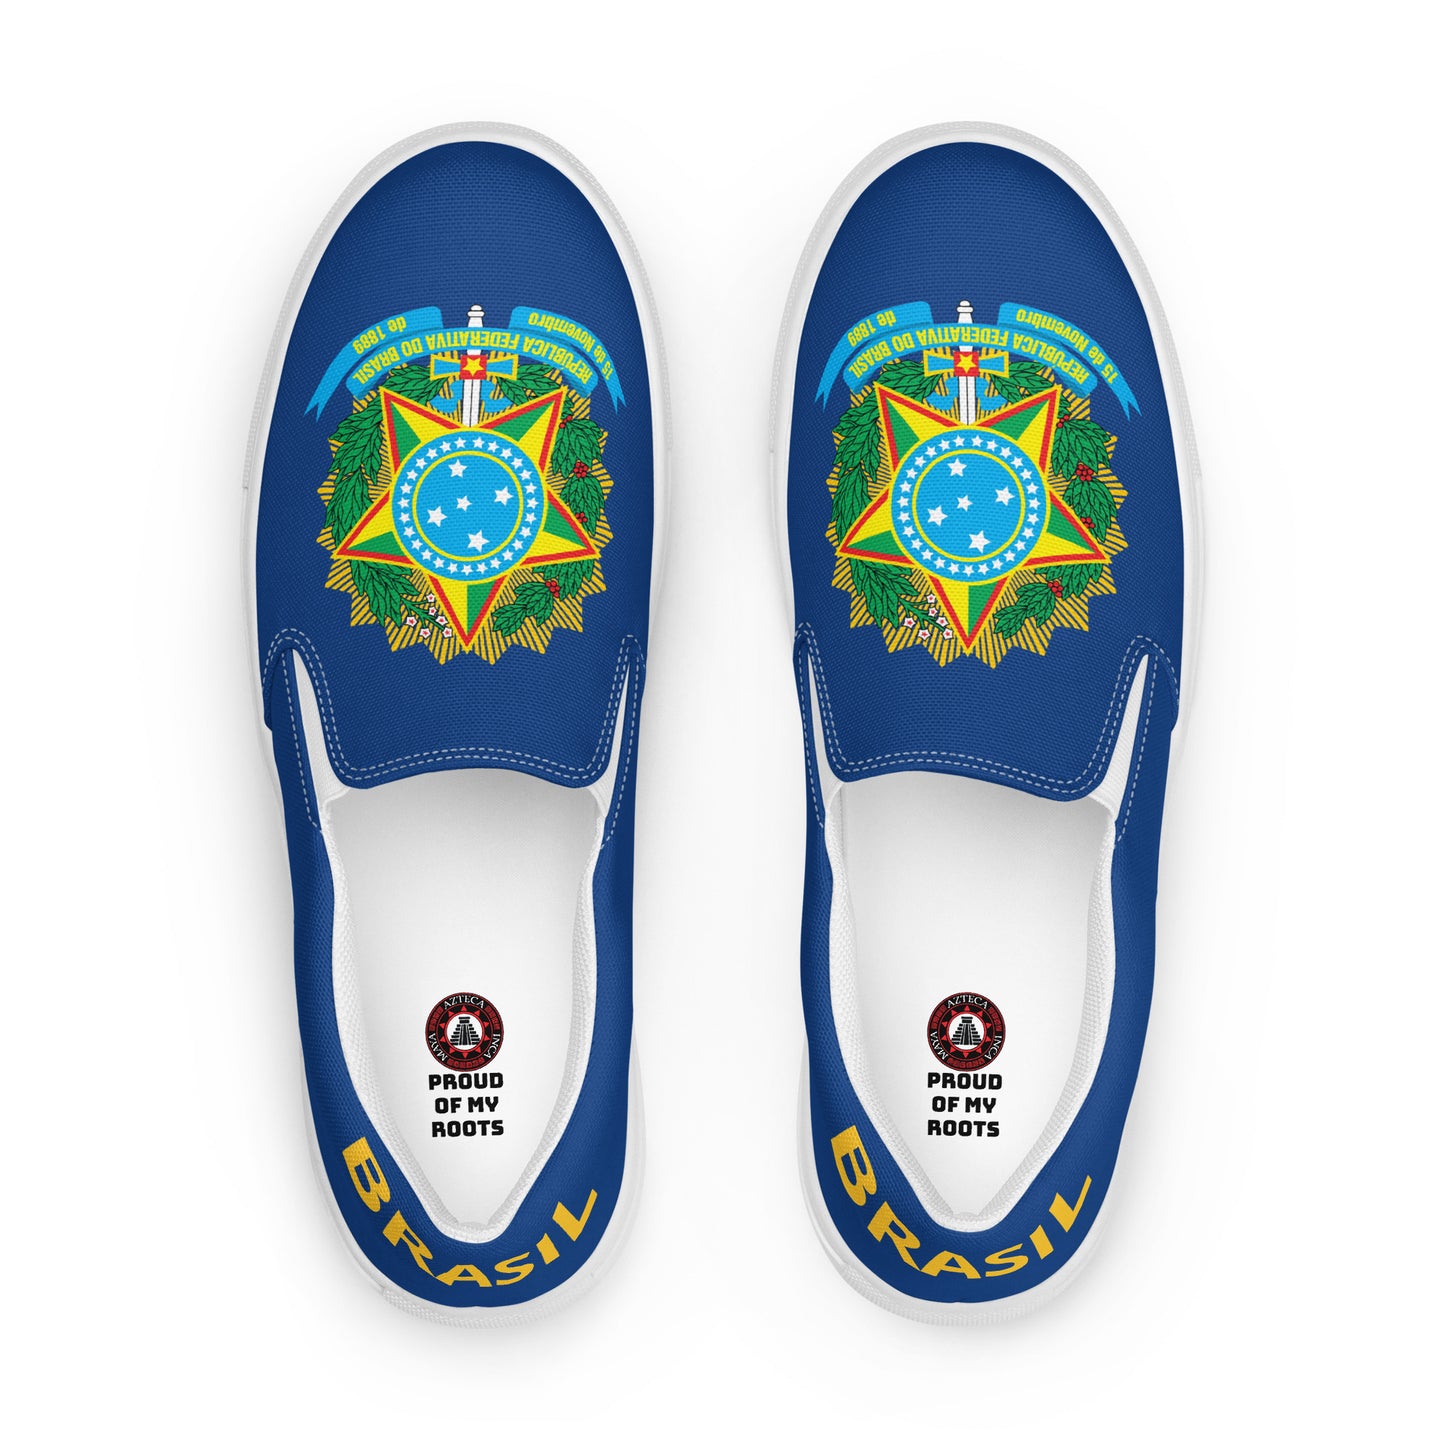 Brasil - Men - Blue - Slip-on shoes